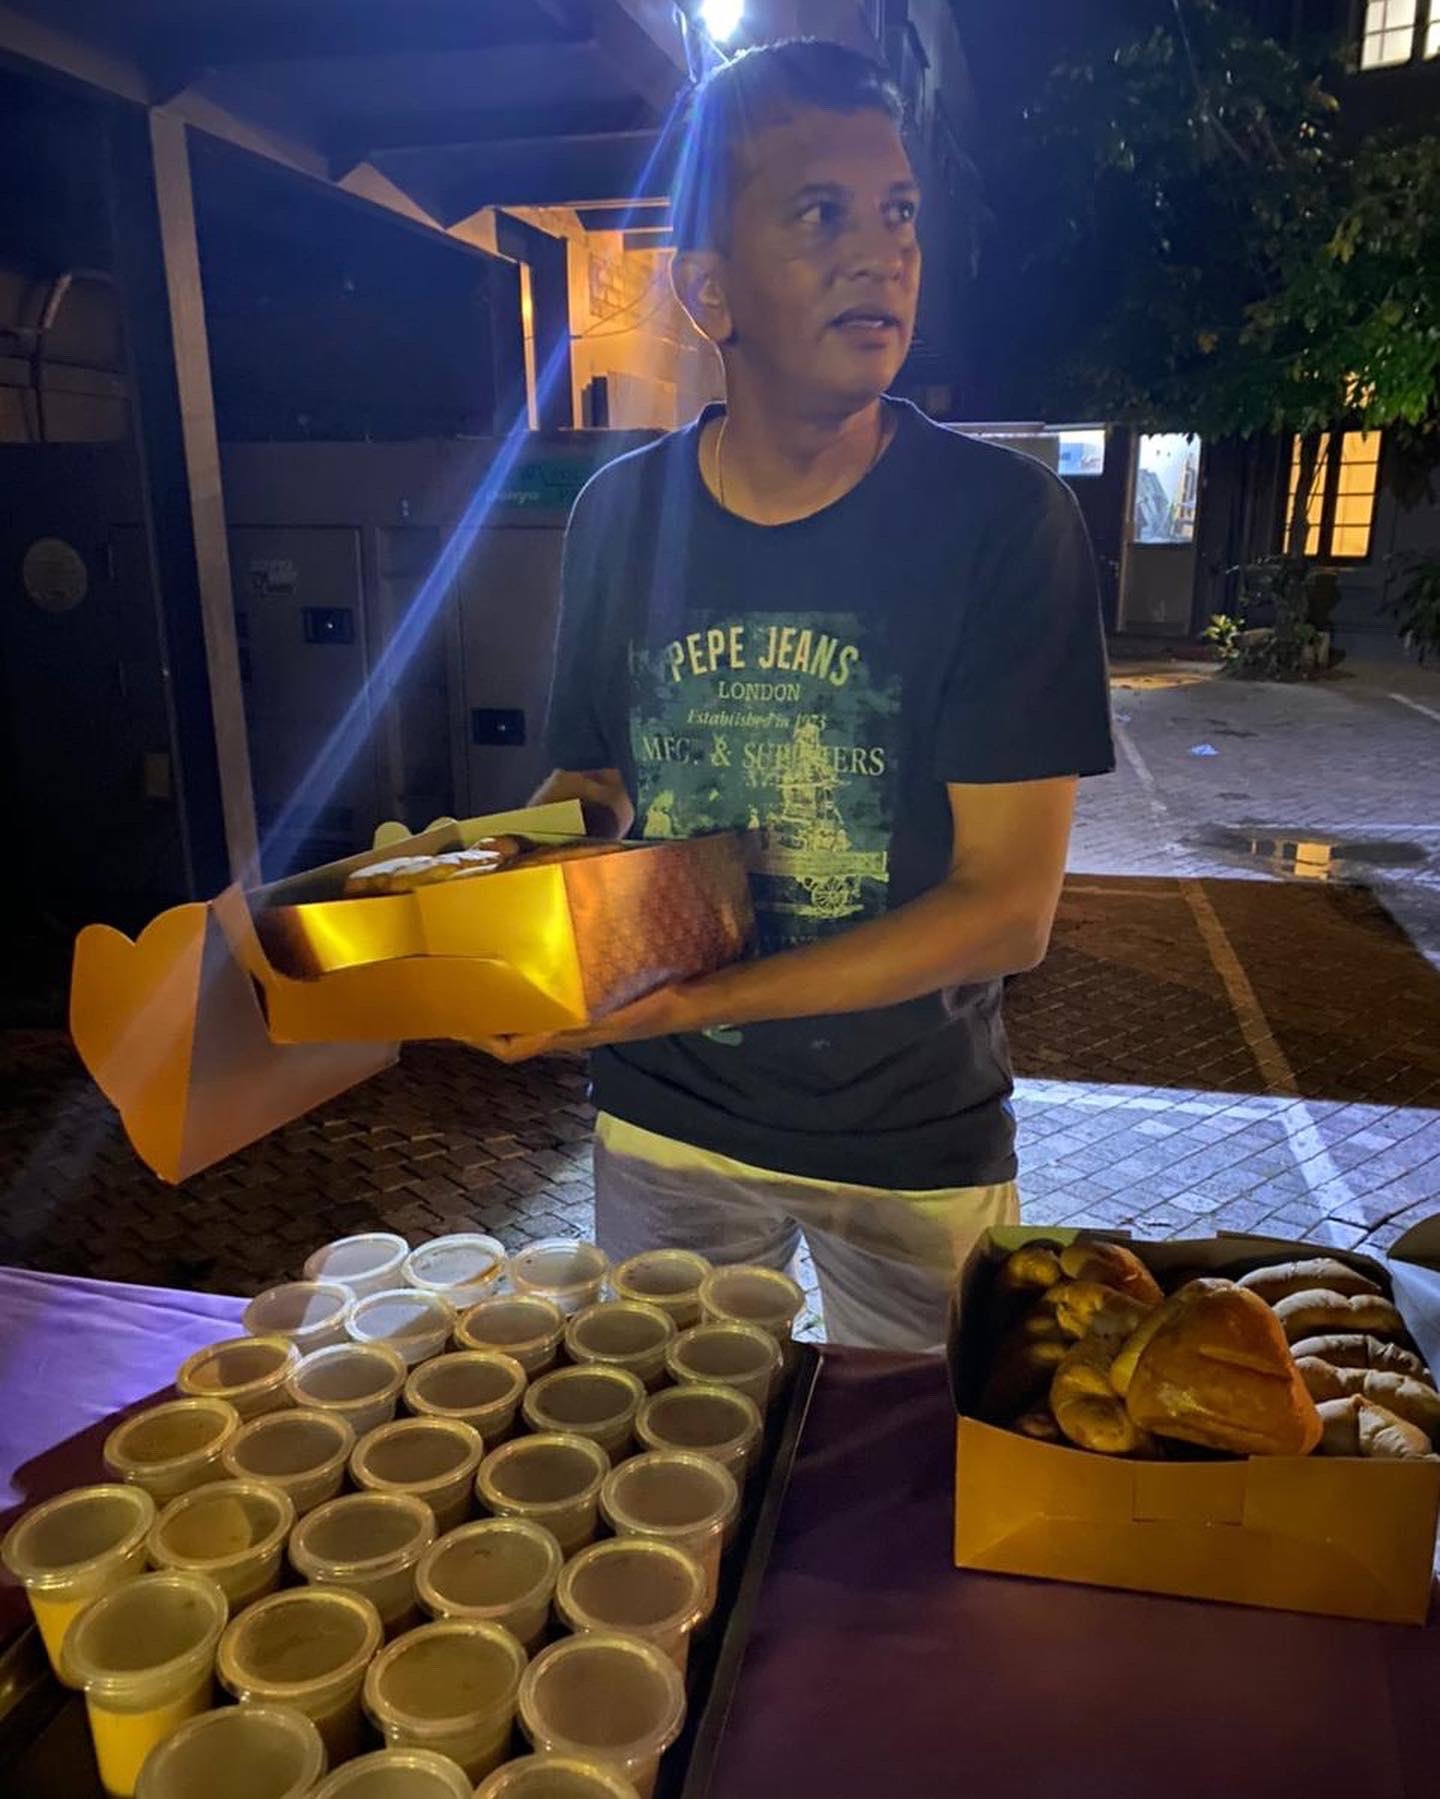 Former cricketer serves tea, buns amid fuel shortage in Sri Lanka